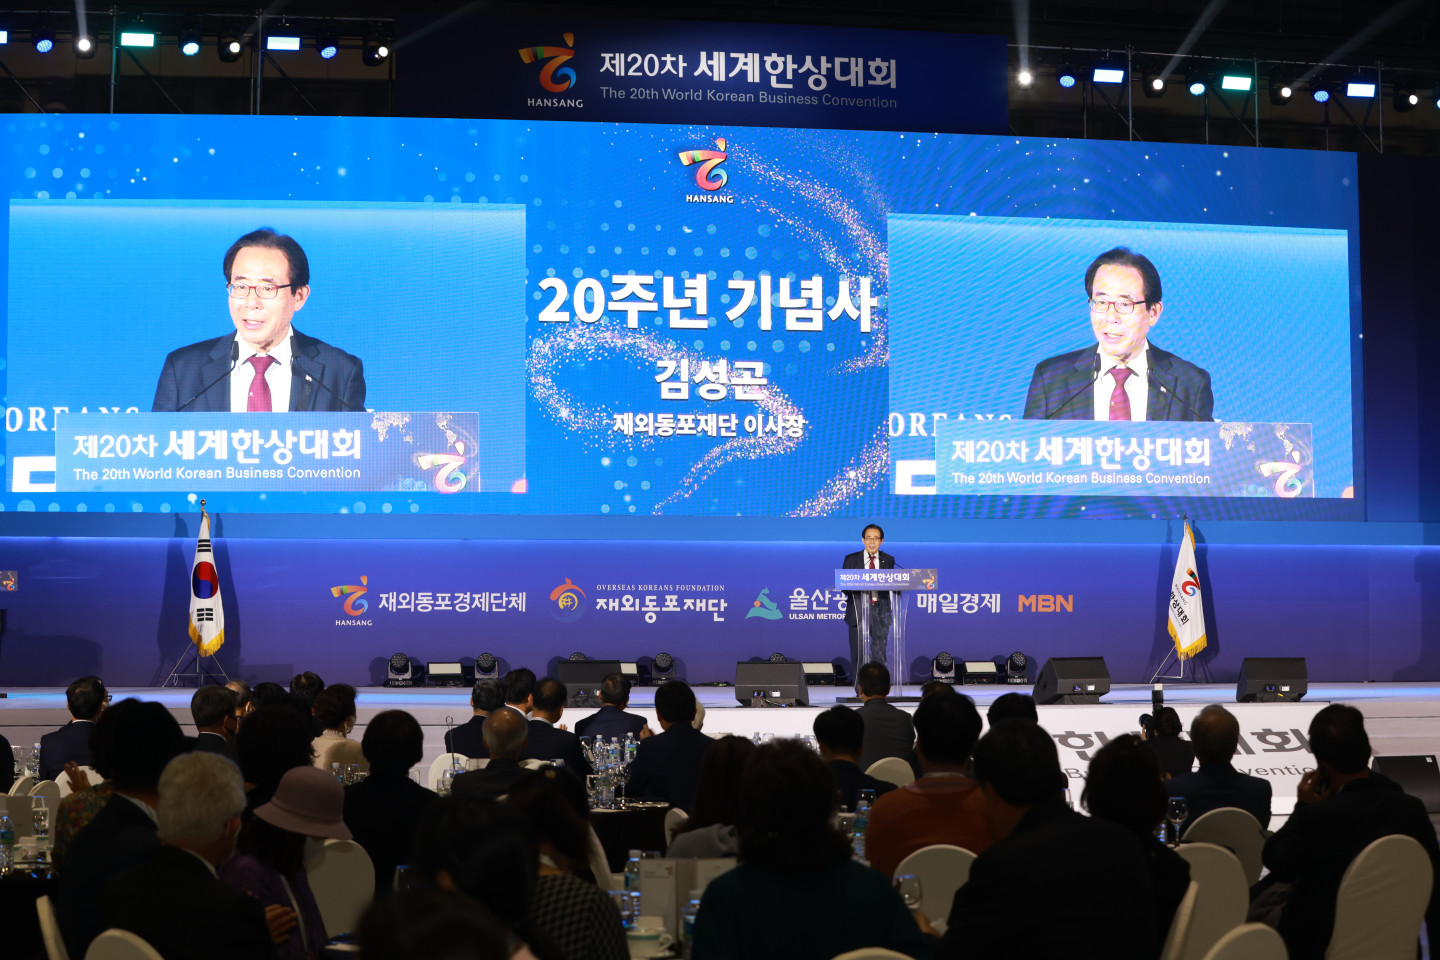 Председатель Ким Сон Гон выступает с памятной речью на 20-й Всемирной корейской деловой конвенции, посвященной празднованию 20-летия